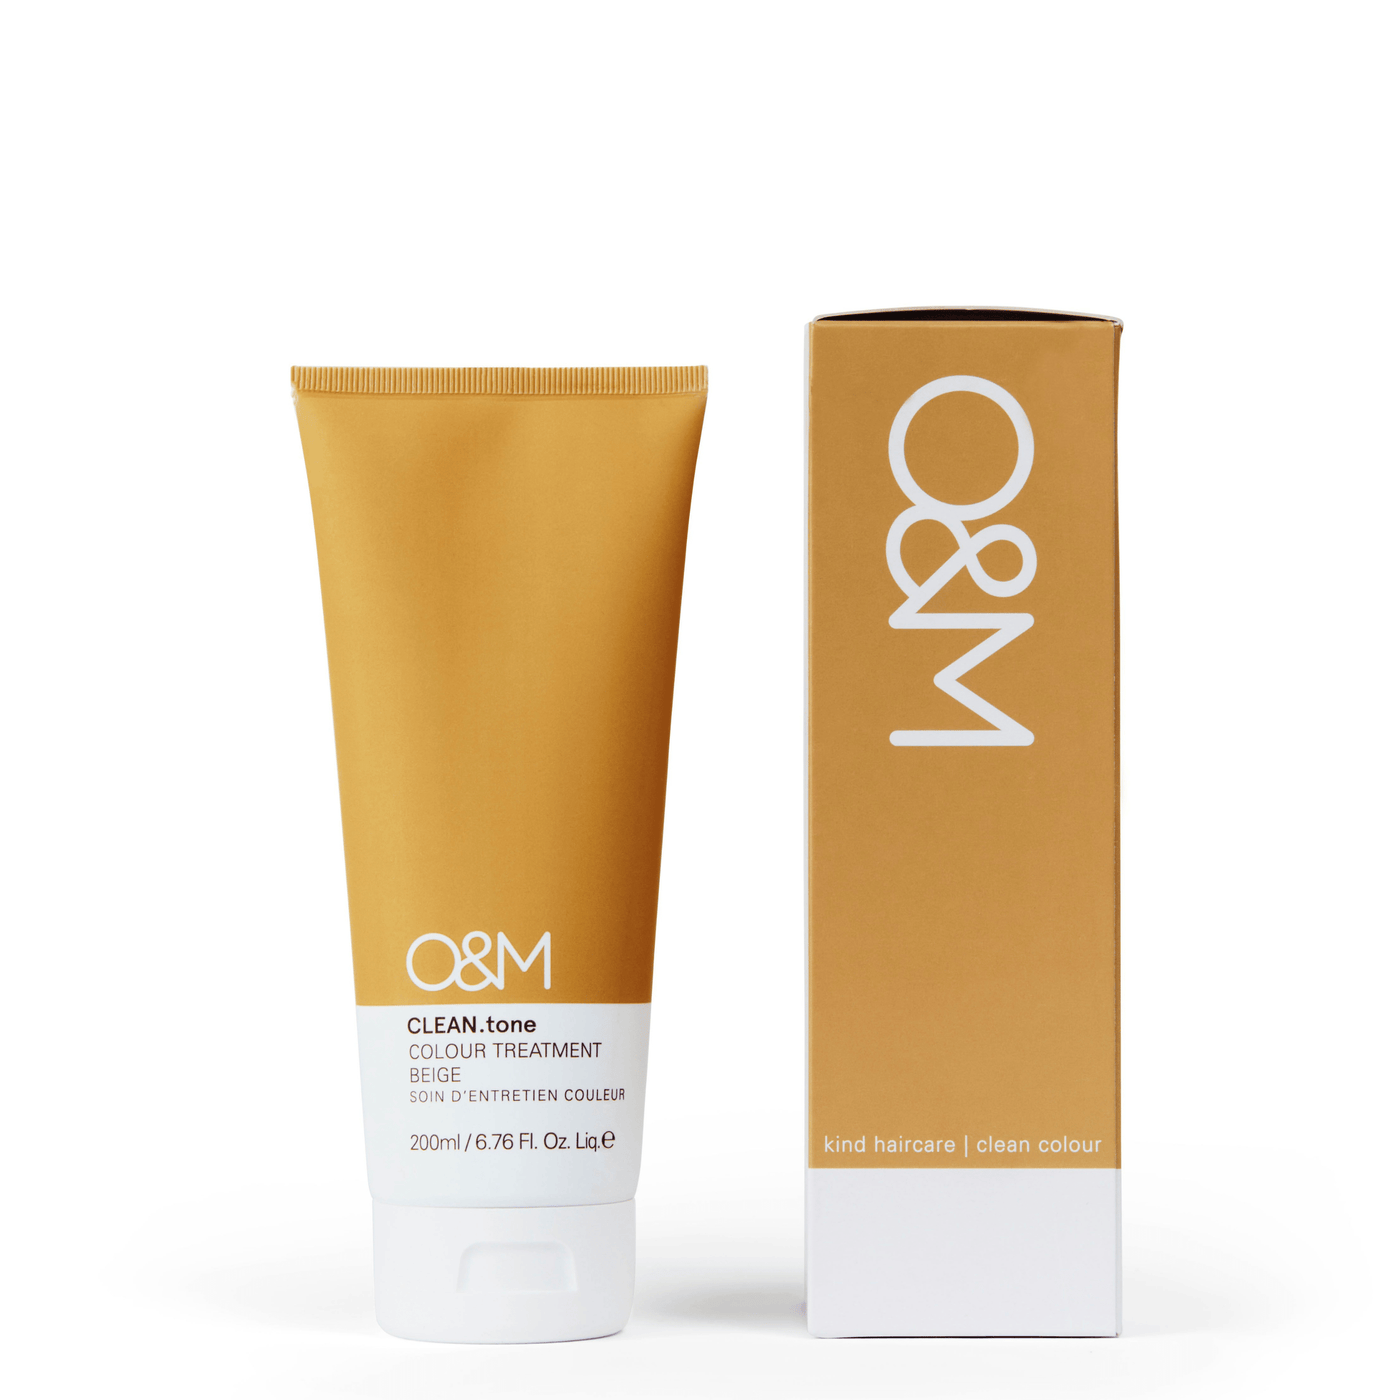 O&M Treatment O&M CLEAN.tone Beige Colour Treatment 200ml